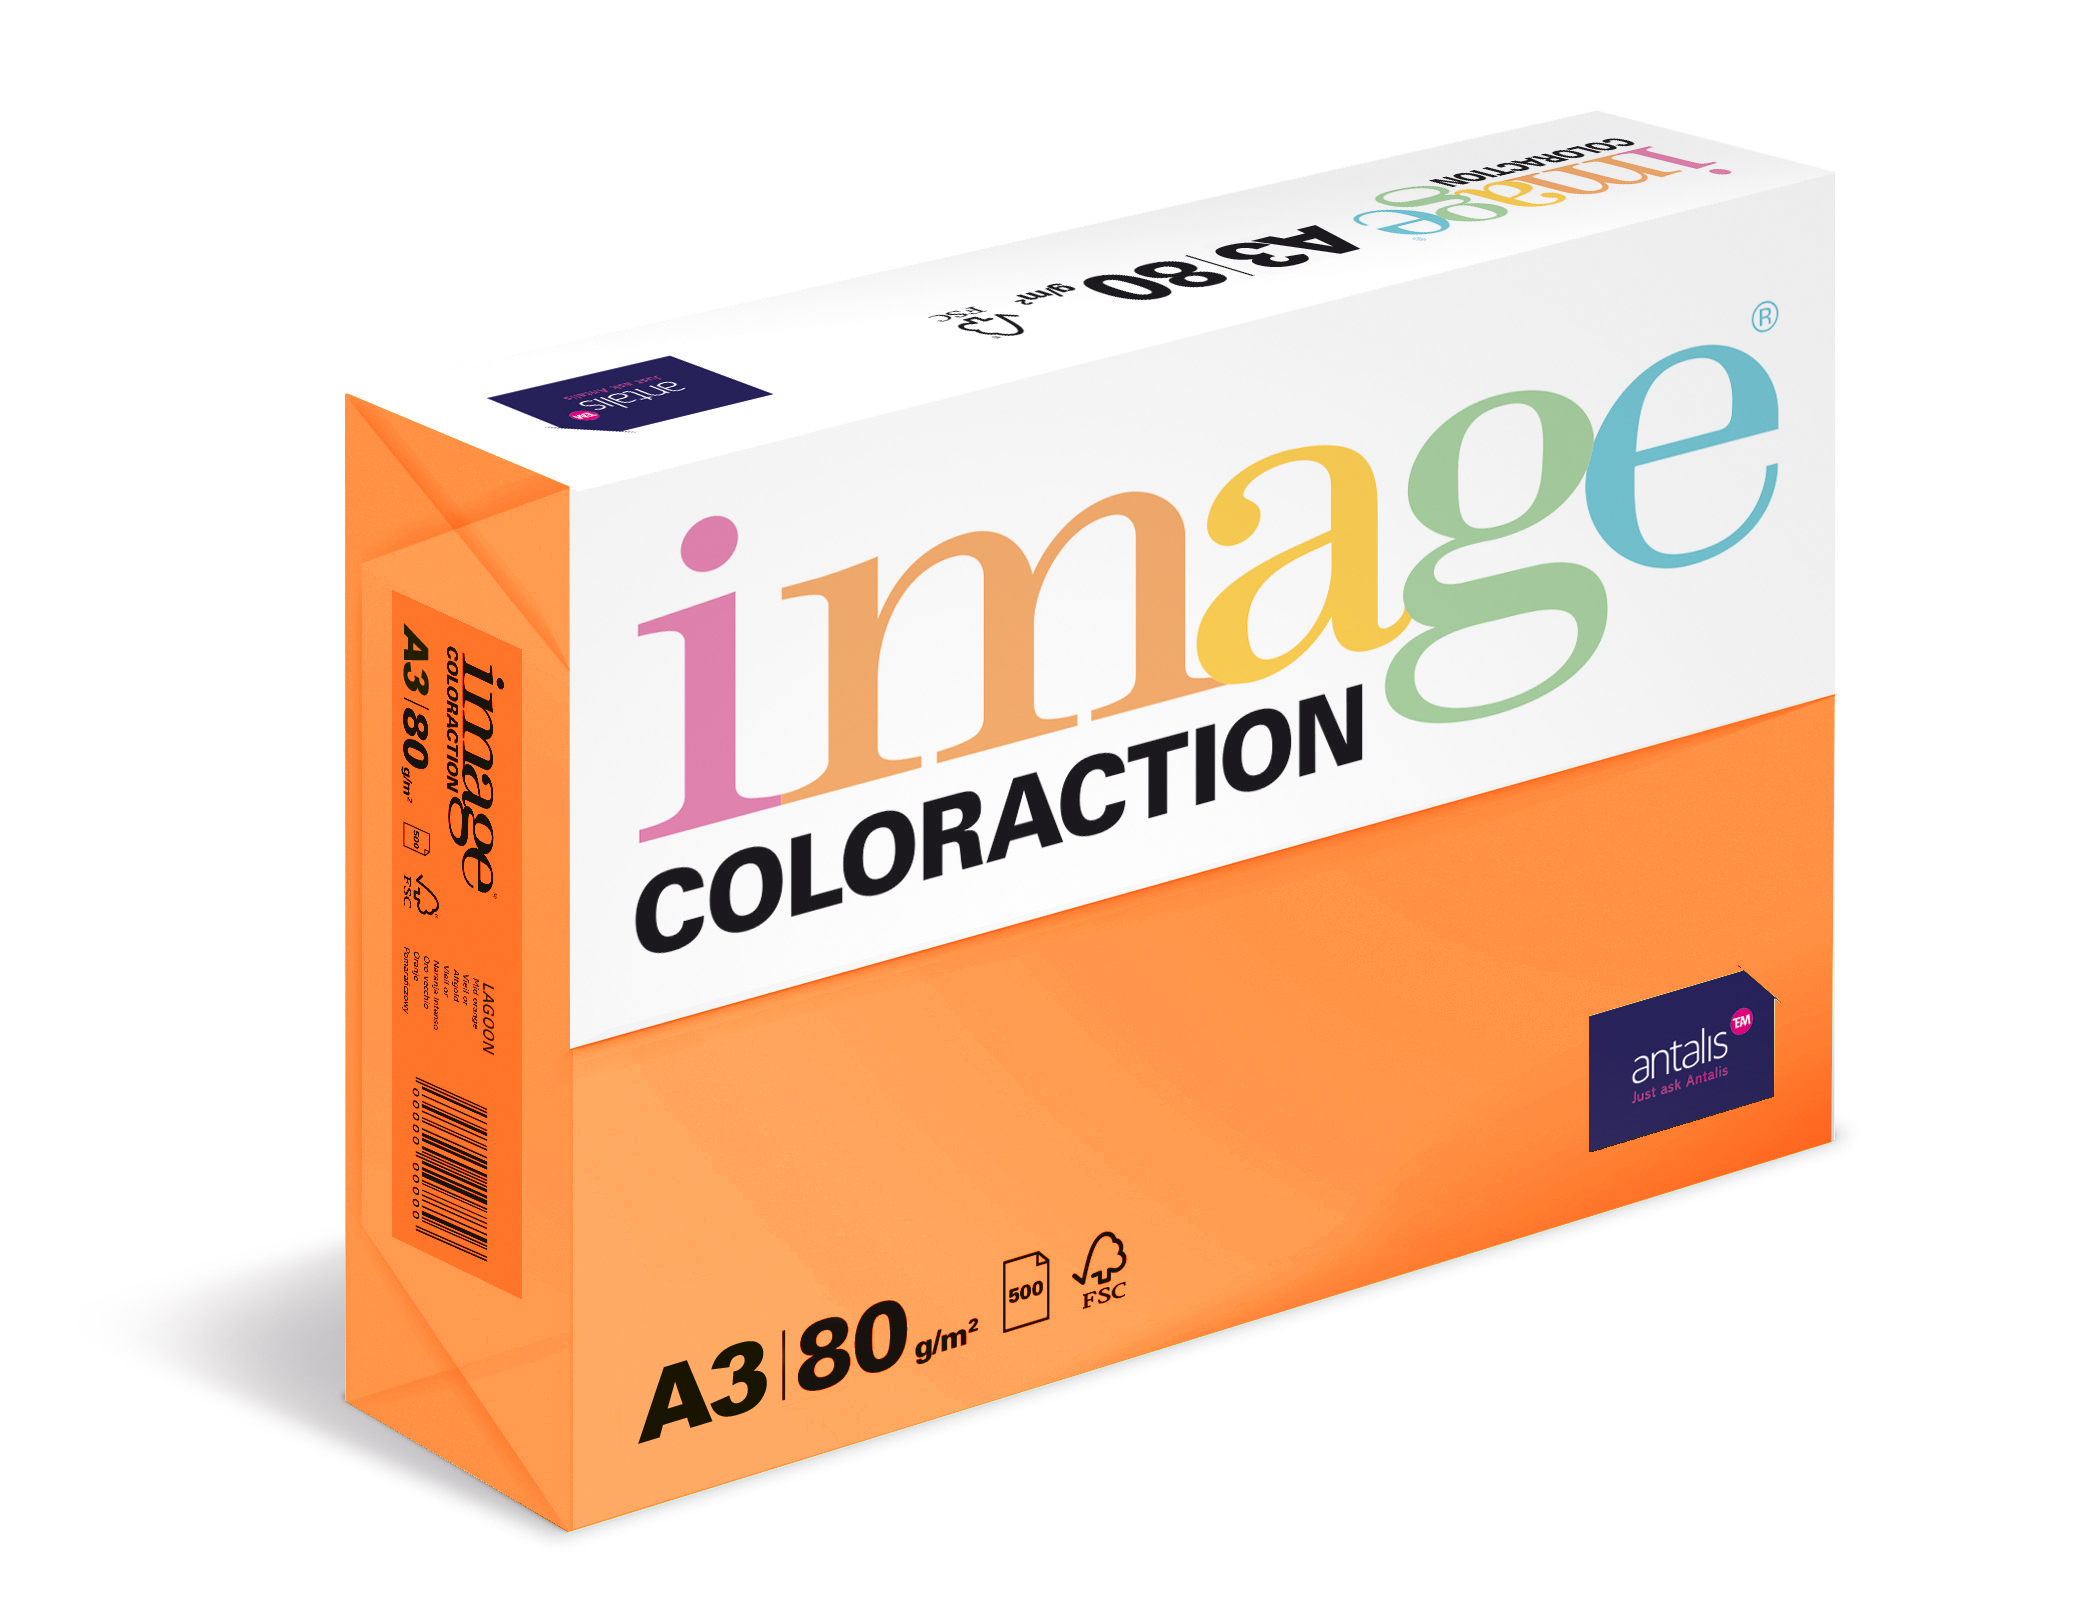 Papír kopírovací Coloraction A3 80g/ 500 llistů oranžová reflexní